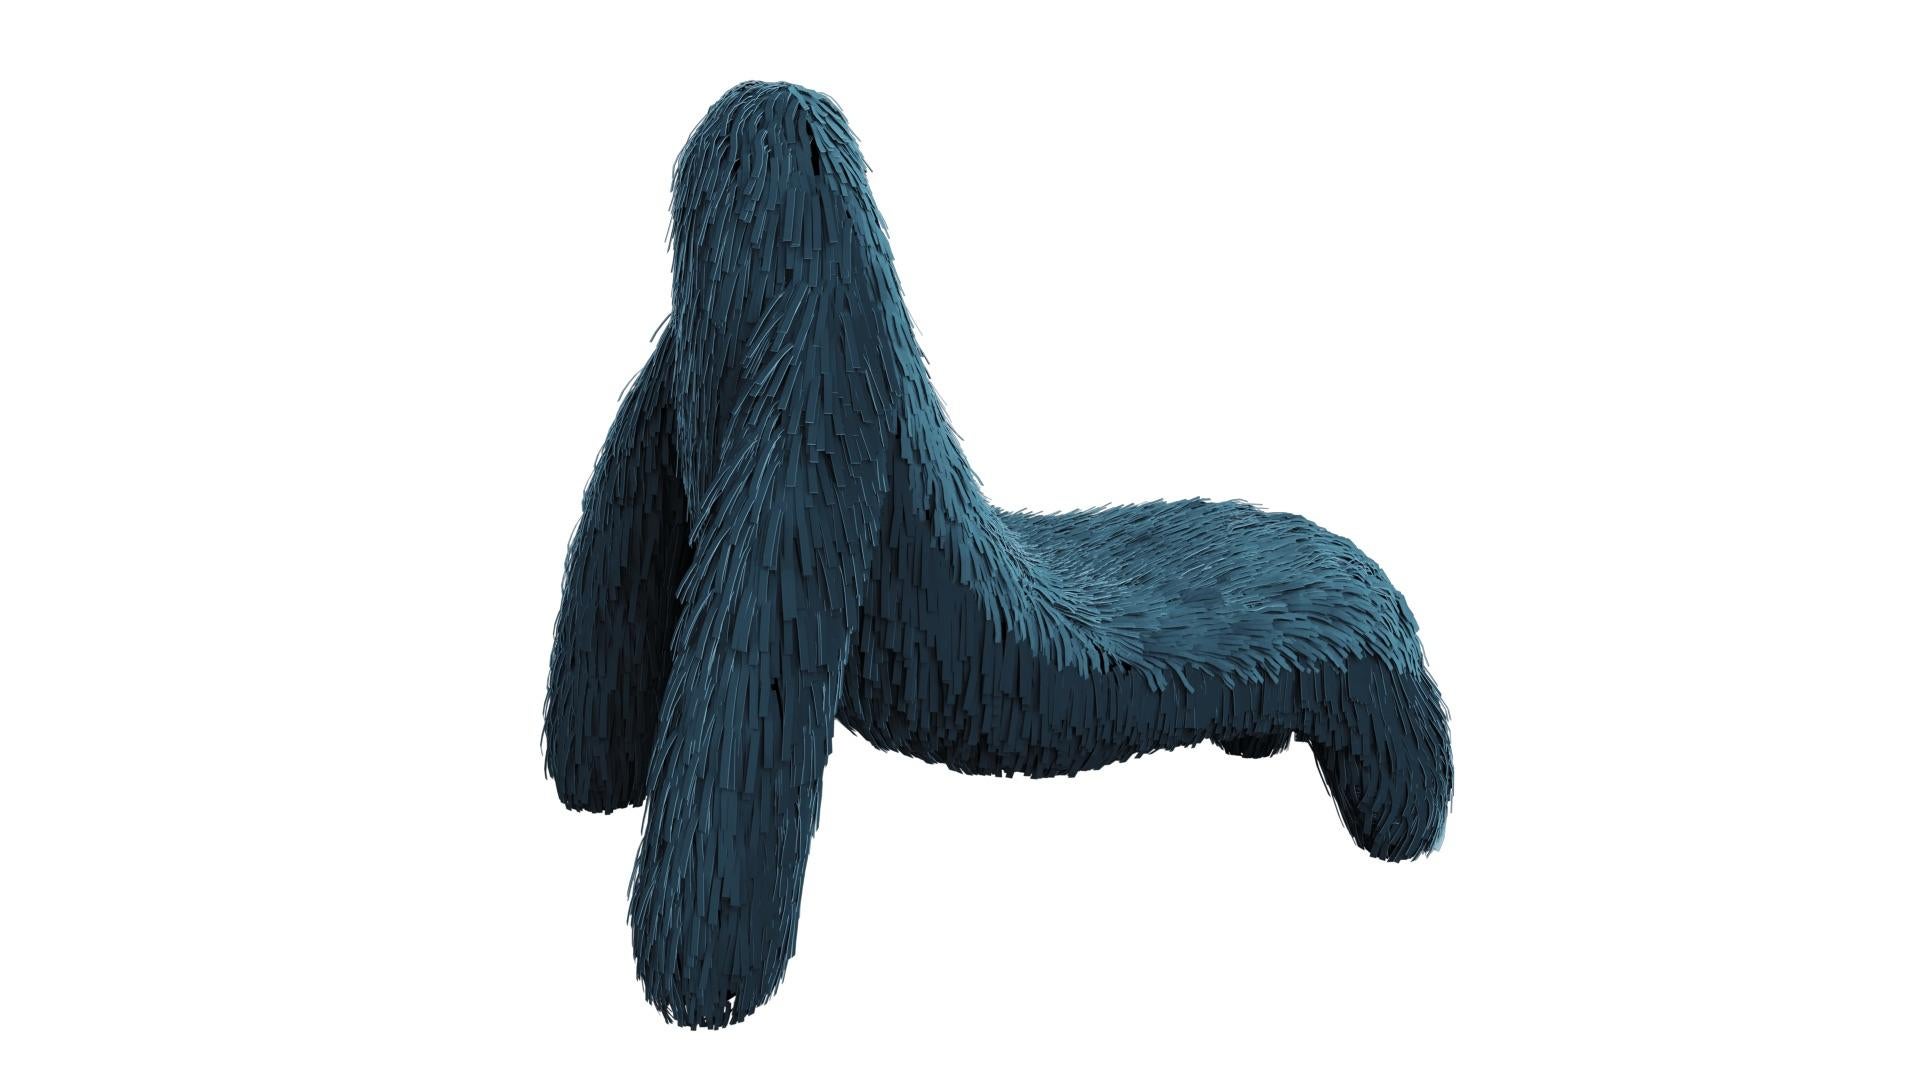 La chaise Gorilla en cuir véritable bleu vert de MARCANTONIO est un siège en forme de singe recouvert d'un riche cuir bleu et vert. Une chaise longue à la forme fantastique et unique

Pour ses premières créations, MARCANTONIO a introduit 